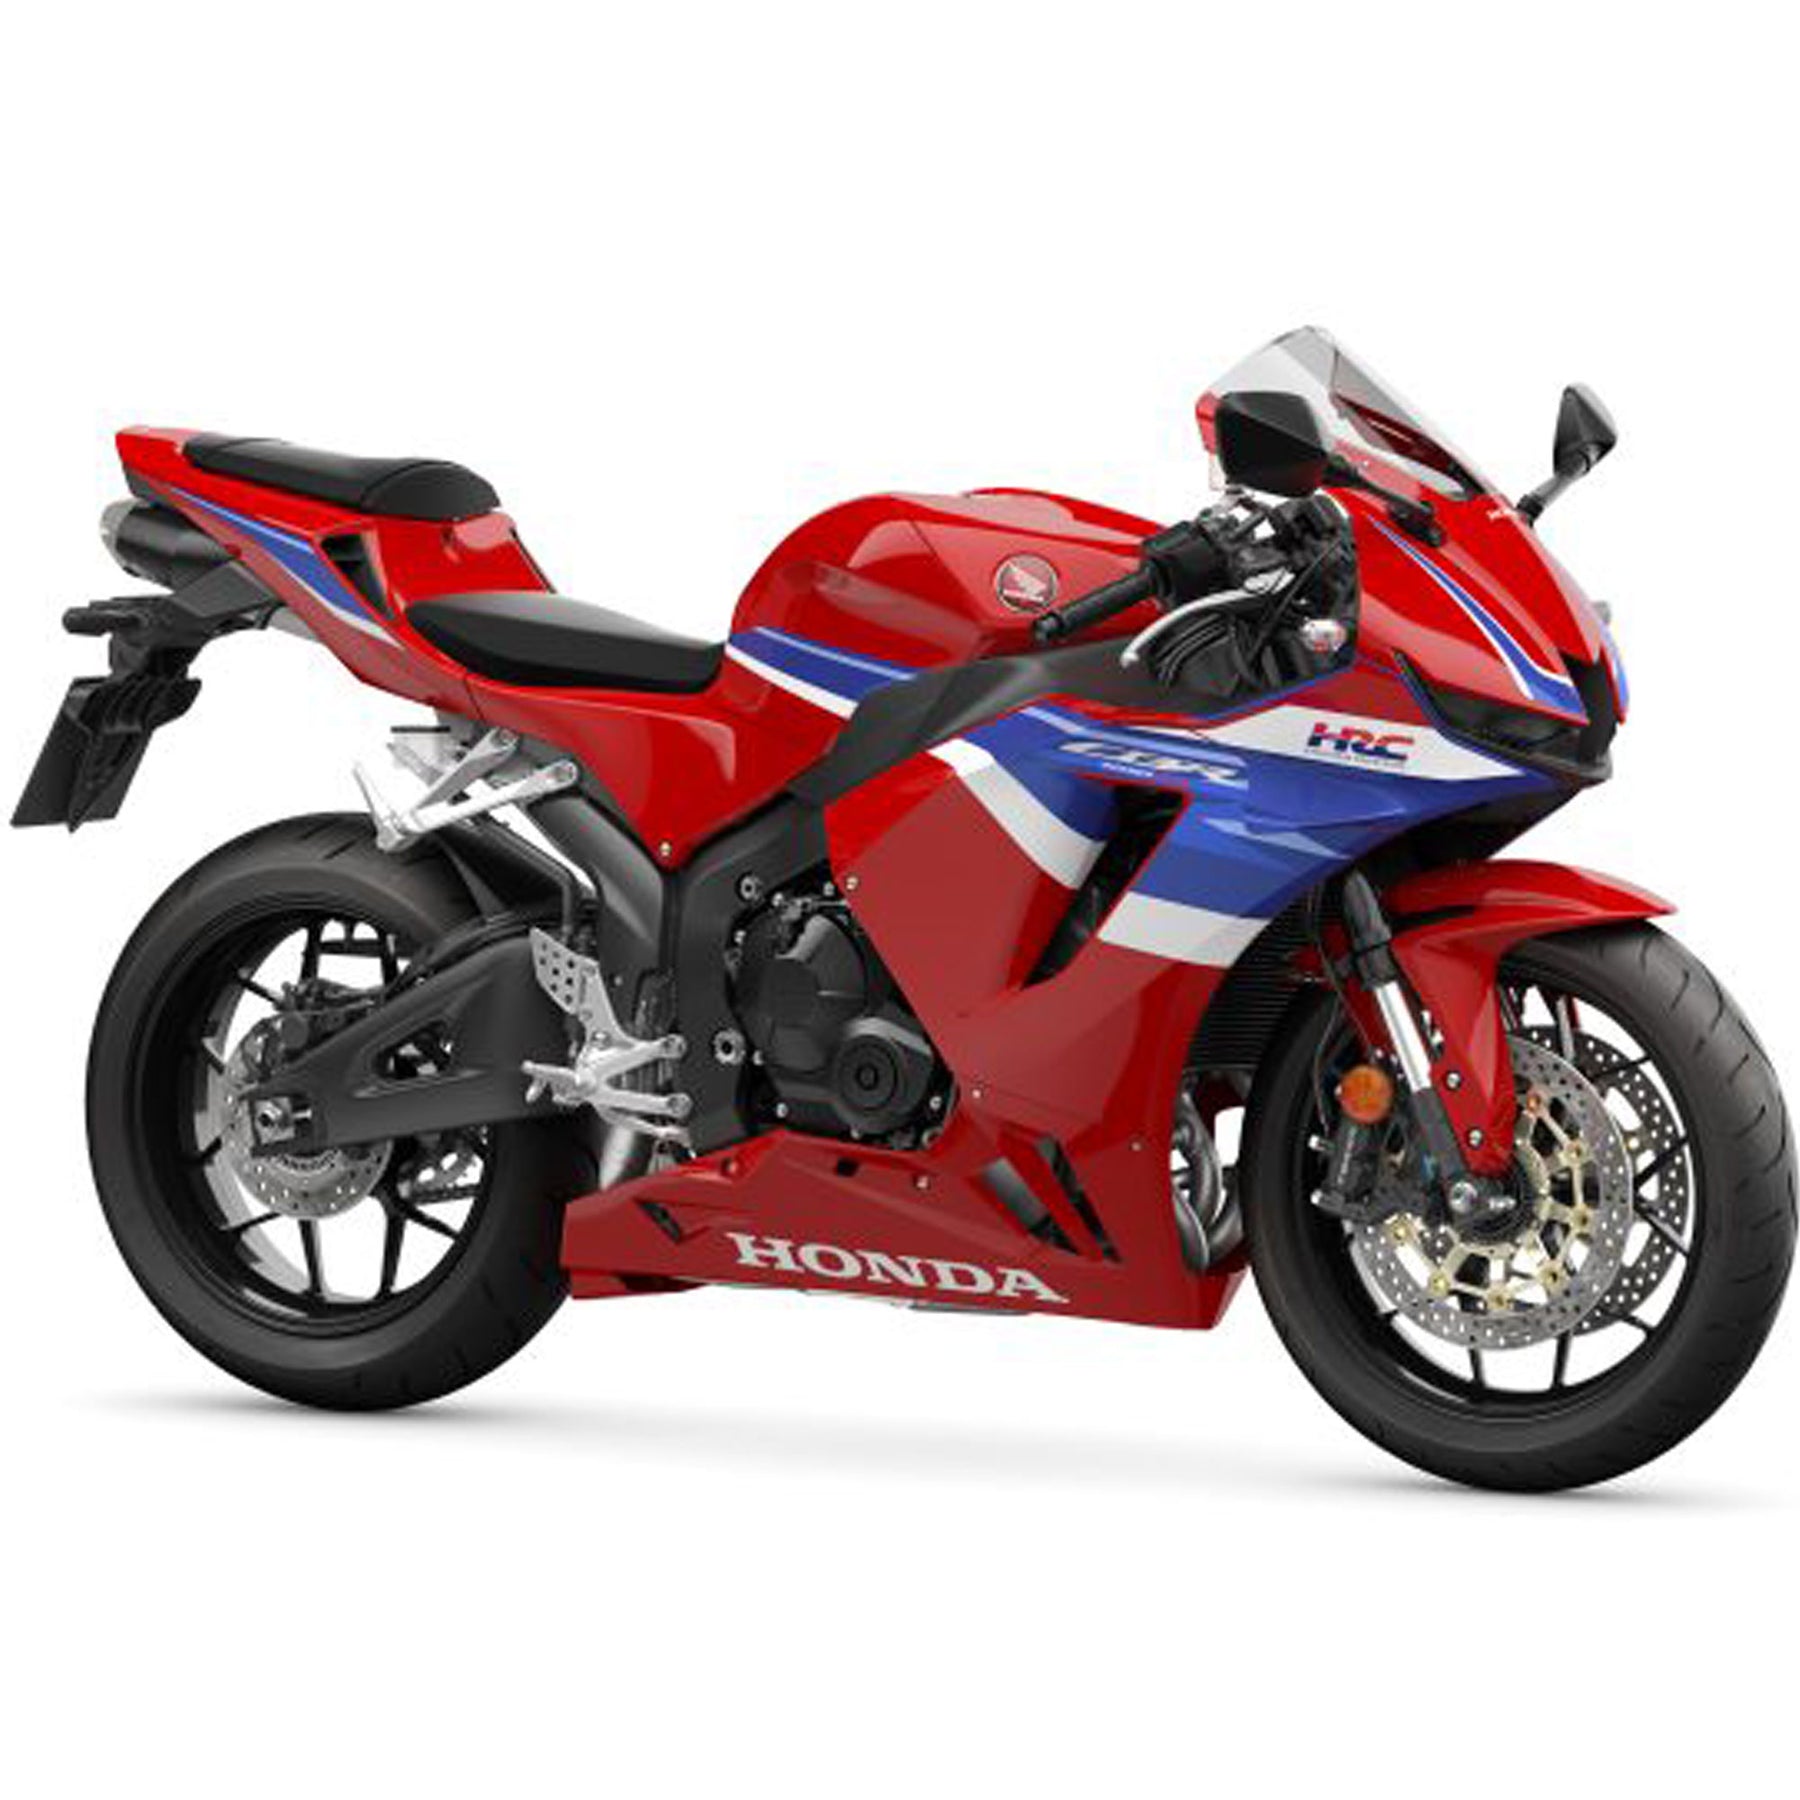 Honda CBR600RR | Super Sport Bikes from Honda of Bournemouth | New Honda Bikes